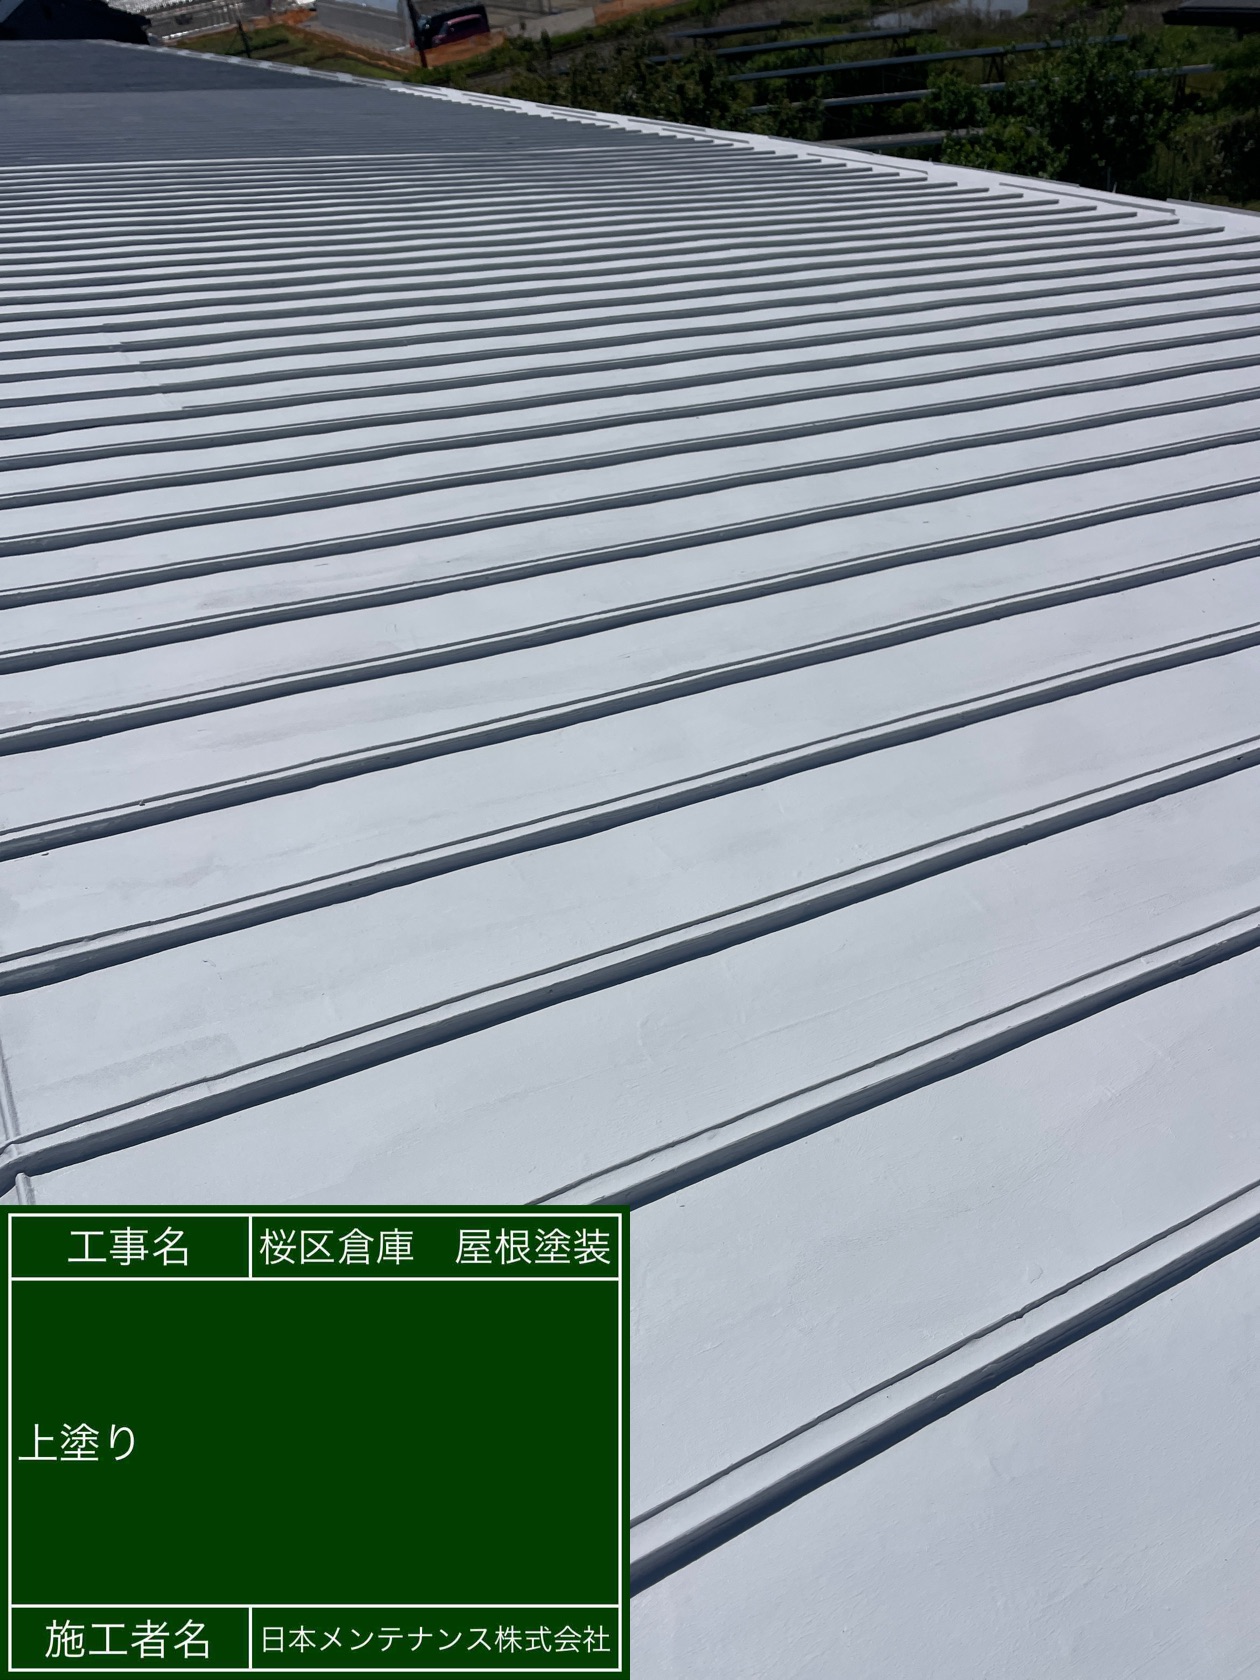 埼玉県さいたま市桜区で瓦棒屋根を雨漏り抑制効果と断熱効果のある塗料で塗装しました。